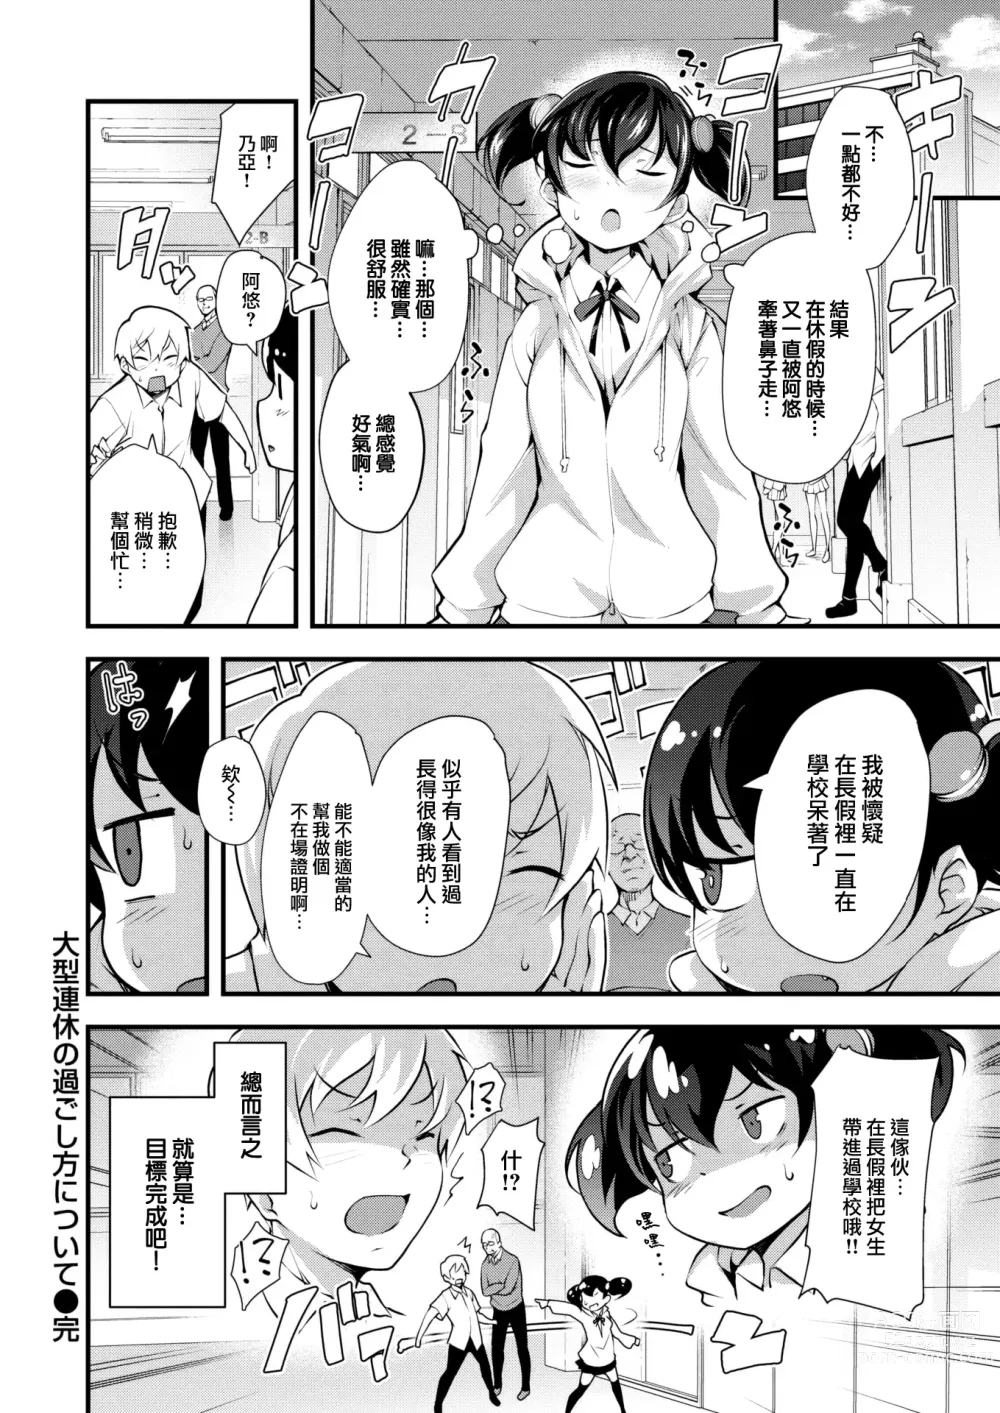 Page 19 of manga Ogata Renkyu no Sugoshikata ni tsuite